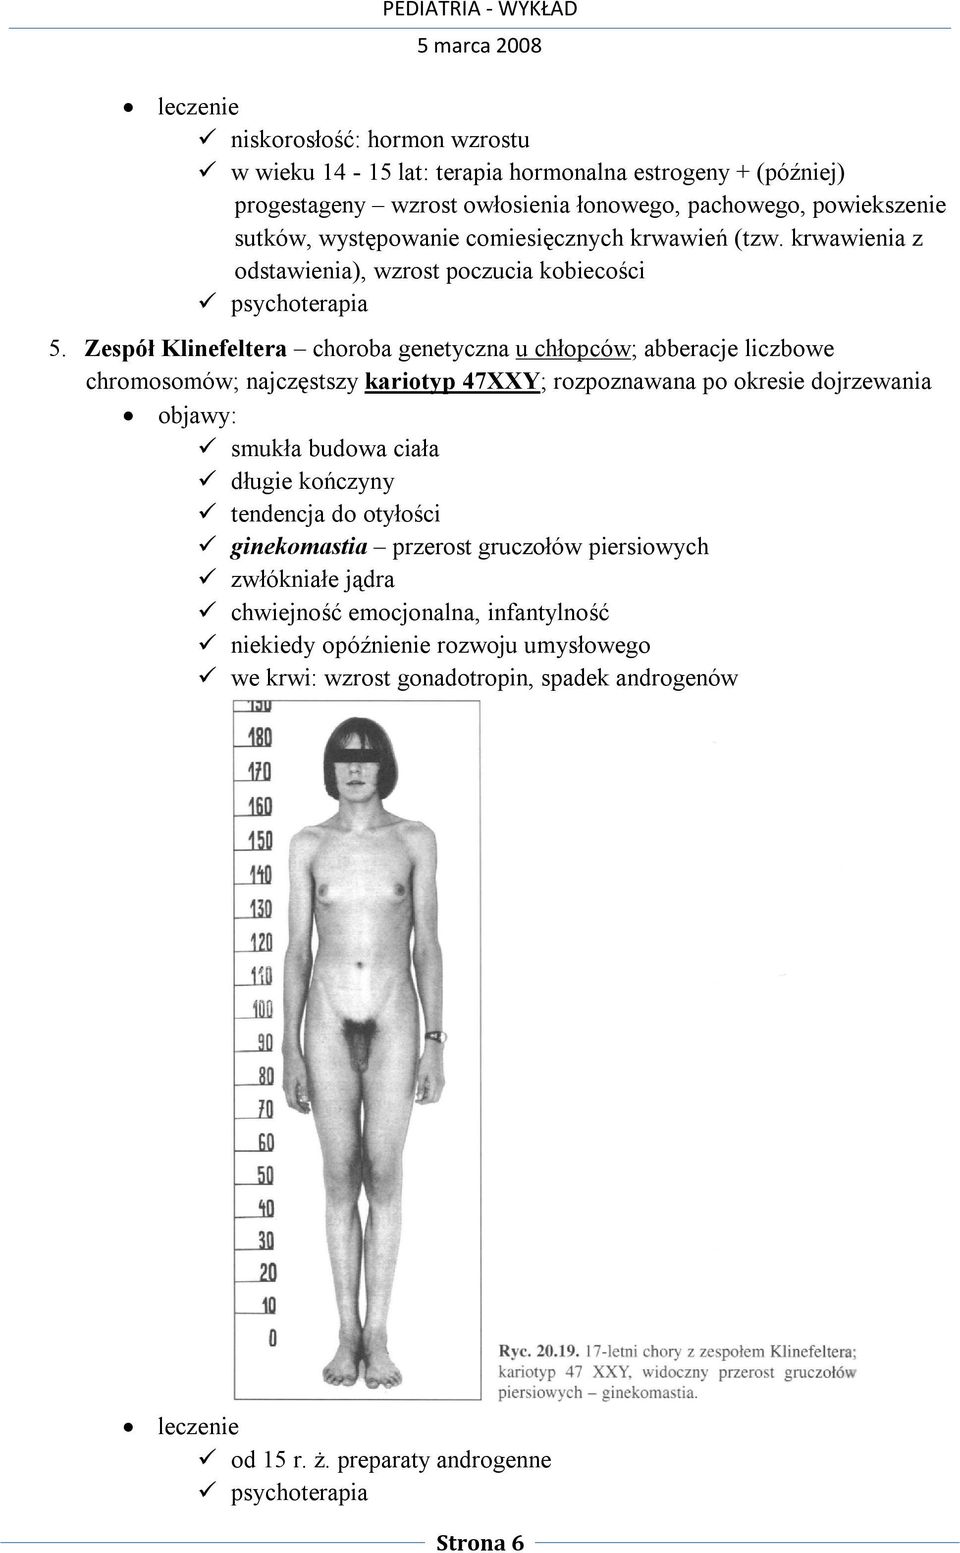 Zespół Klinefeltera choroba genetyczna u chłopców; abberacje liczbowe chromosomów; najczęstszy kariotyp 47XXY; rozpoznawana po okresie dojrzewania objawy: smukła budowa ciała długie